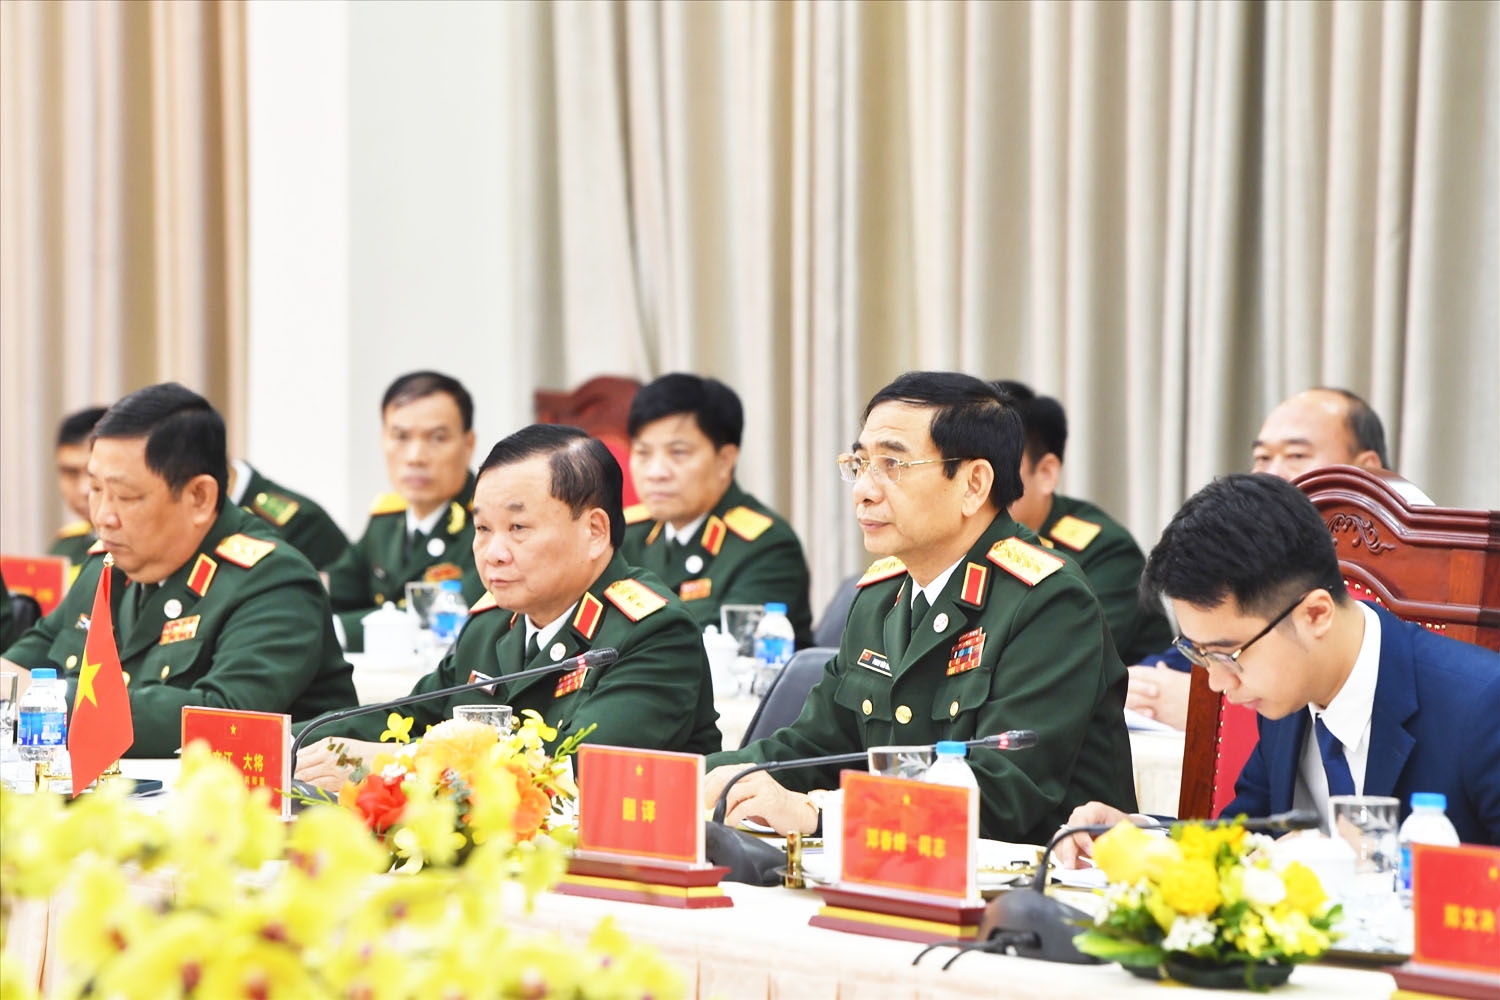 Bộ trưởng Phan Văn Giang khẳng định Giao lưu hữu nghị quốc phòng là hoạt động quan trọng góp phần xây dựng đường biên giới Việt Nam - Trung Quốc hòa bình, hữu nghị, ổn định, hợp tác và phát triển 